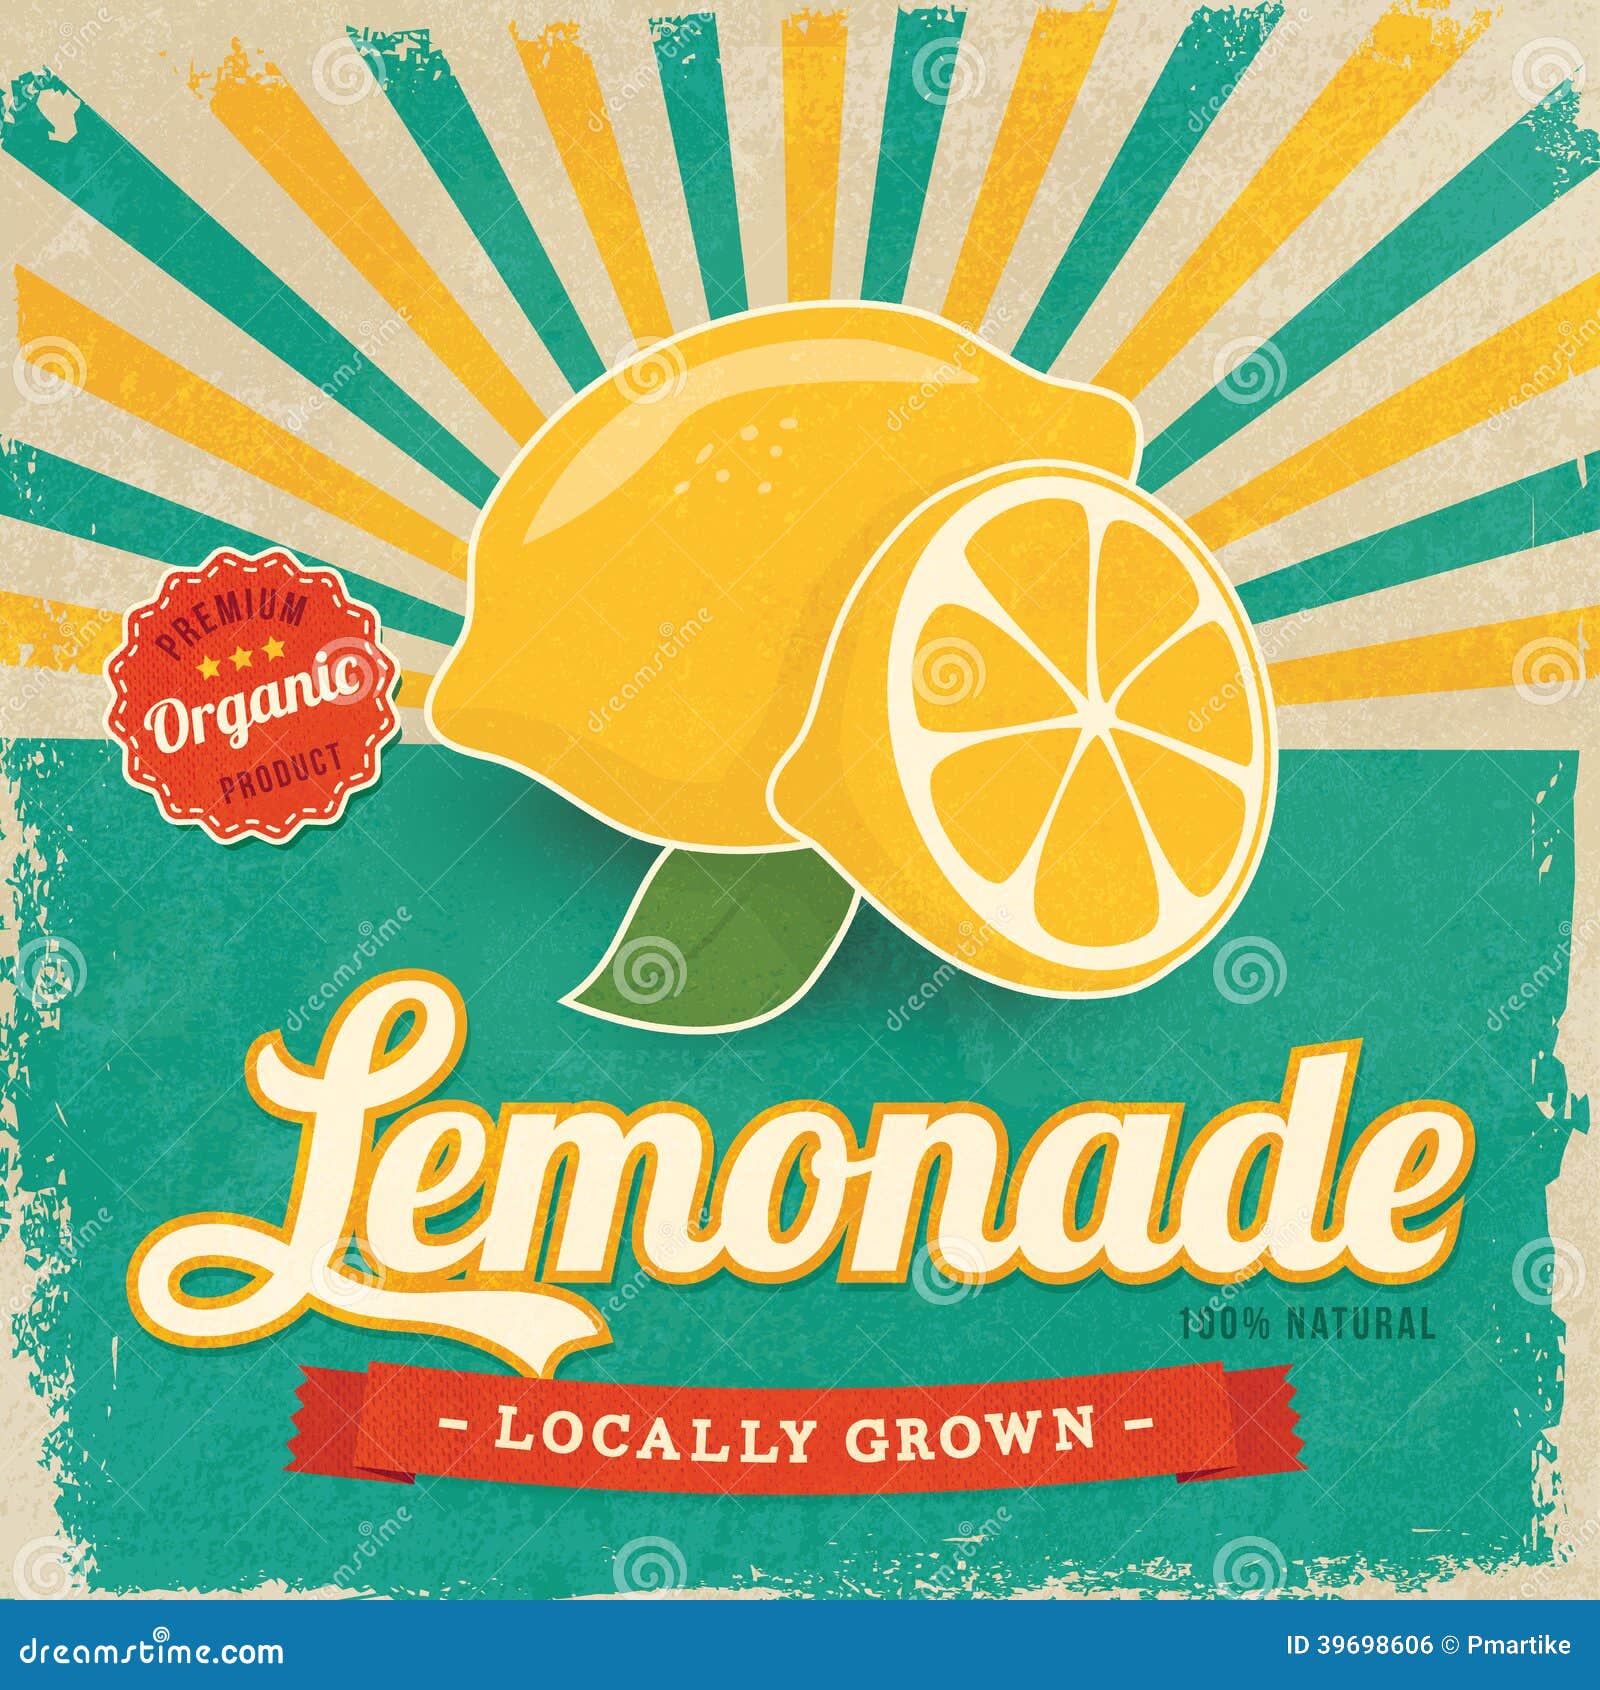 Lemonade business plan